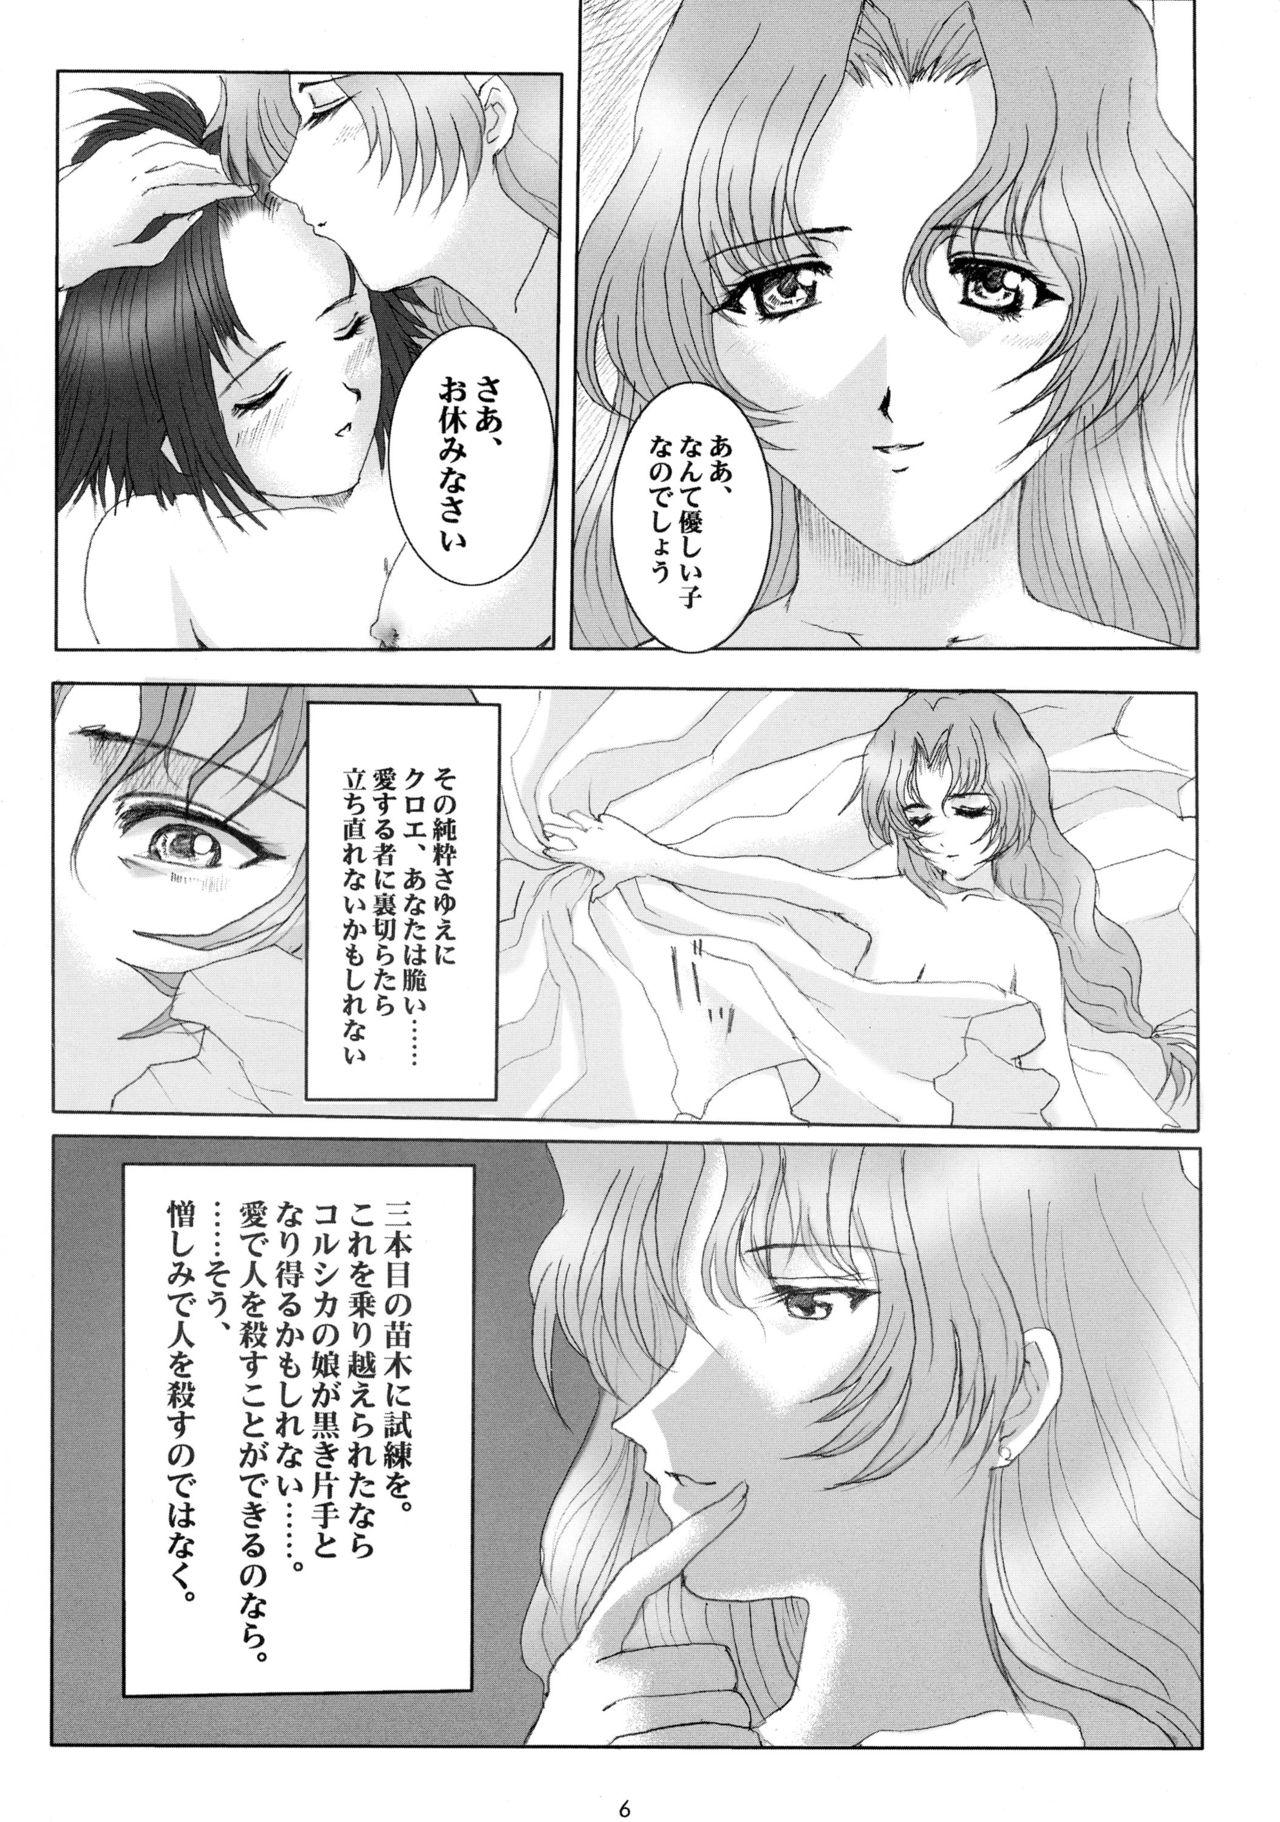 Pain Promesse II Yakusoku no Toki Kanketsuhen - Noir Beard - Page 6